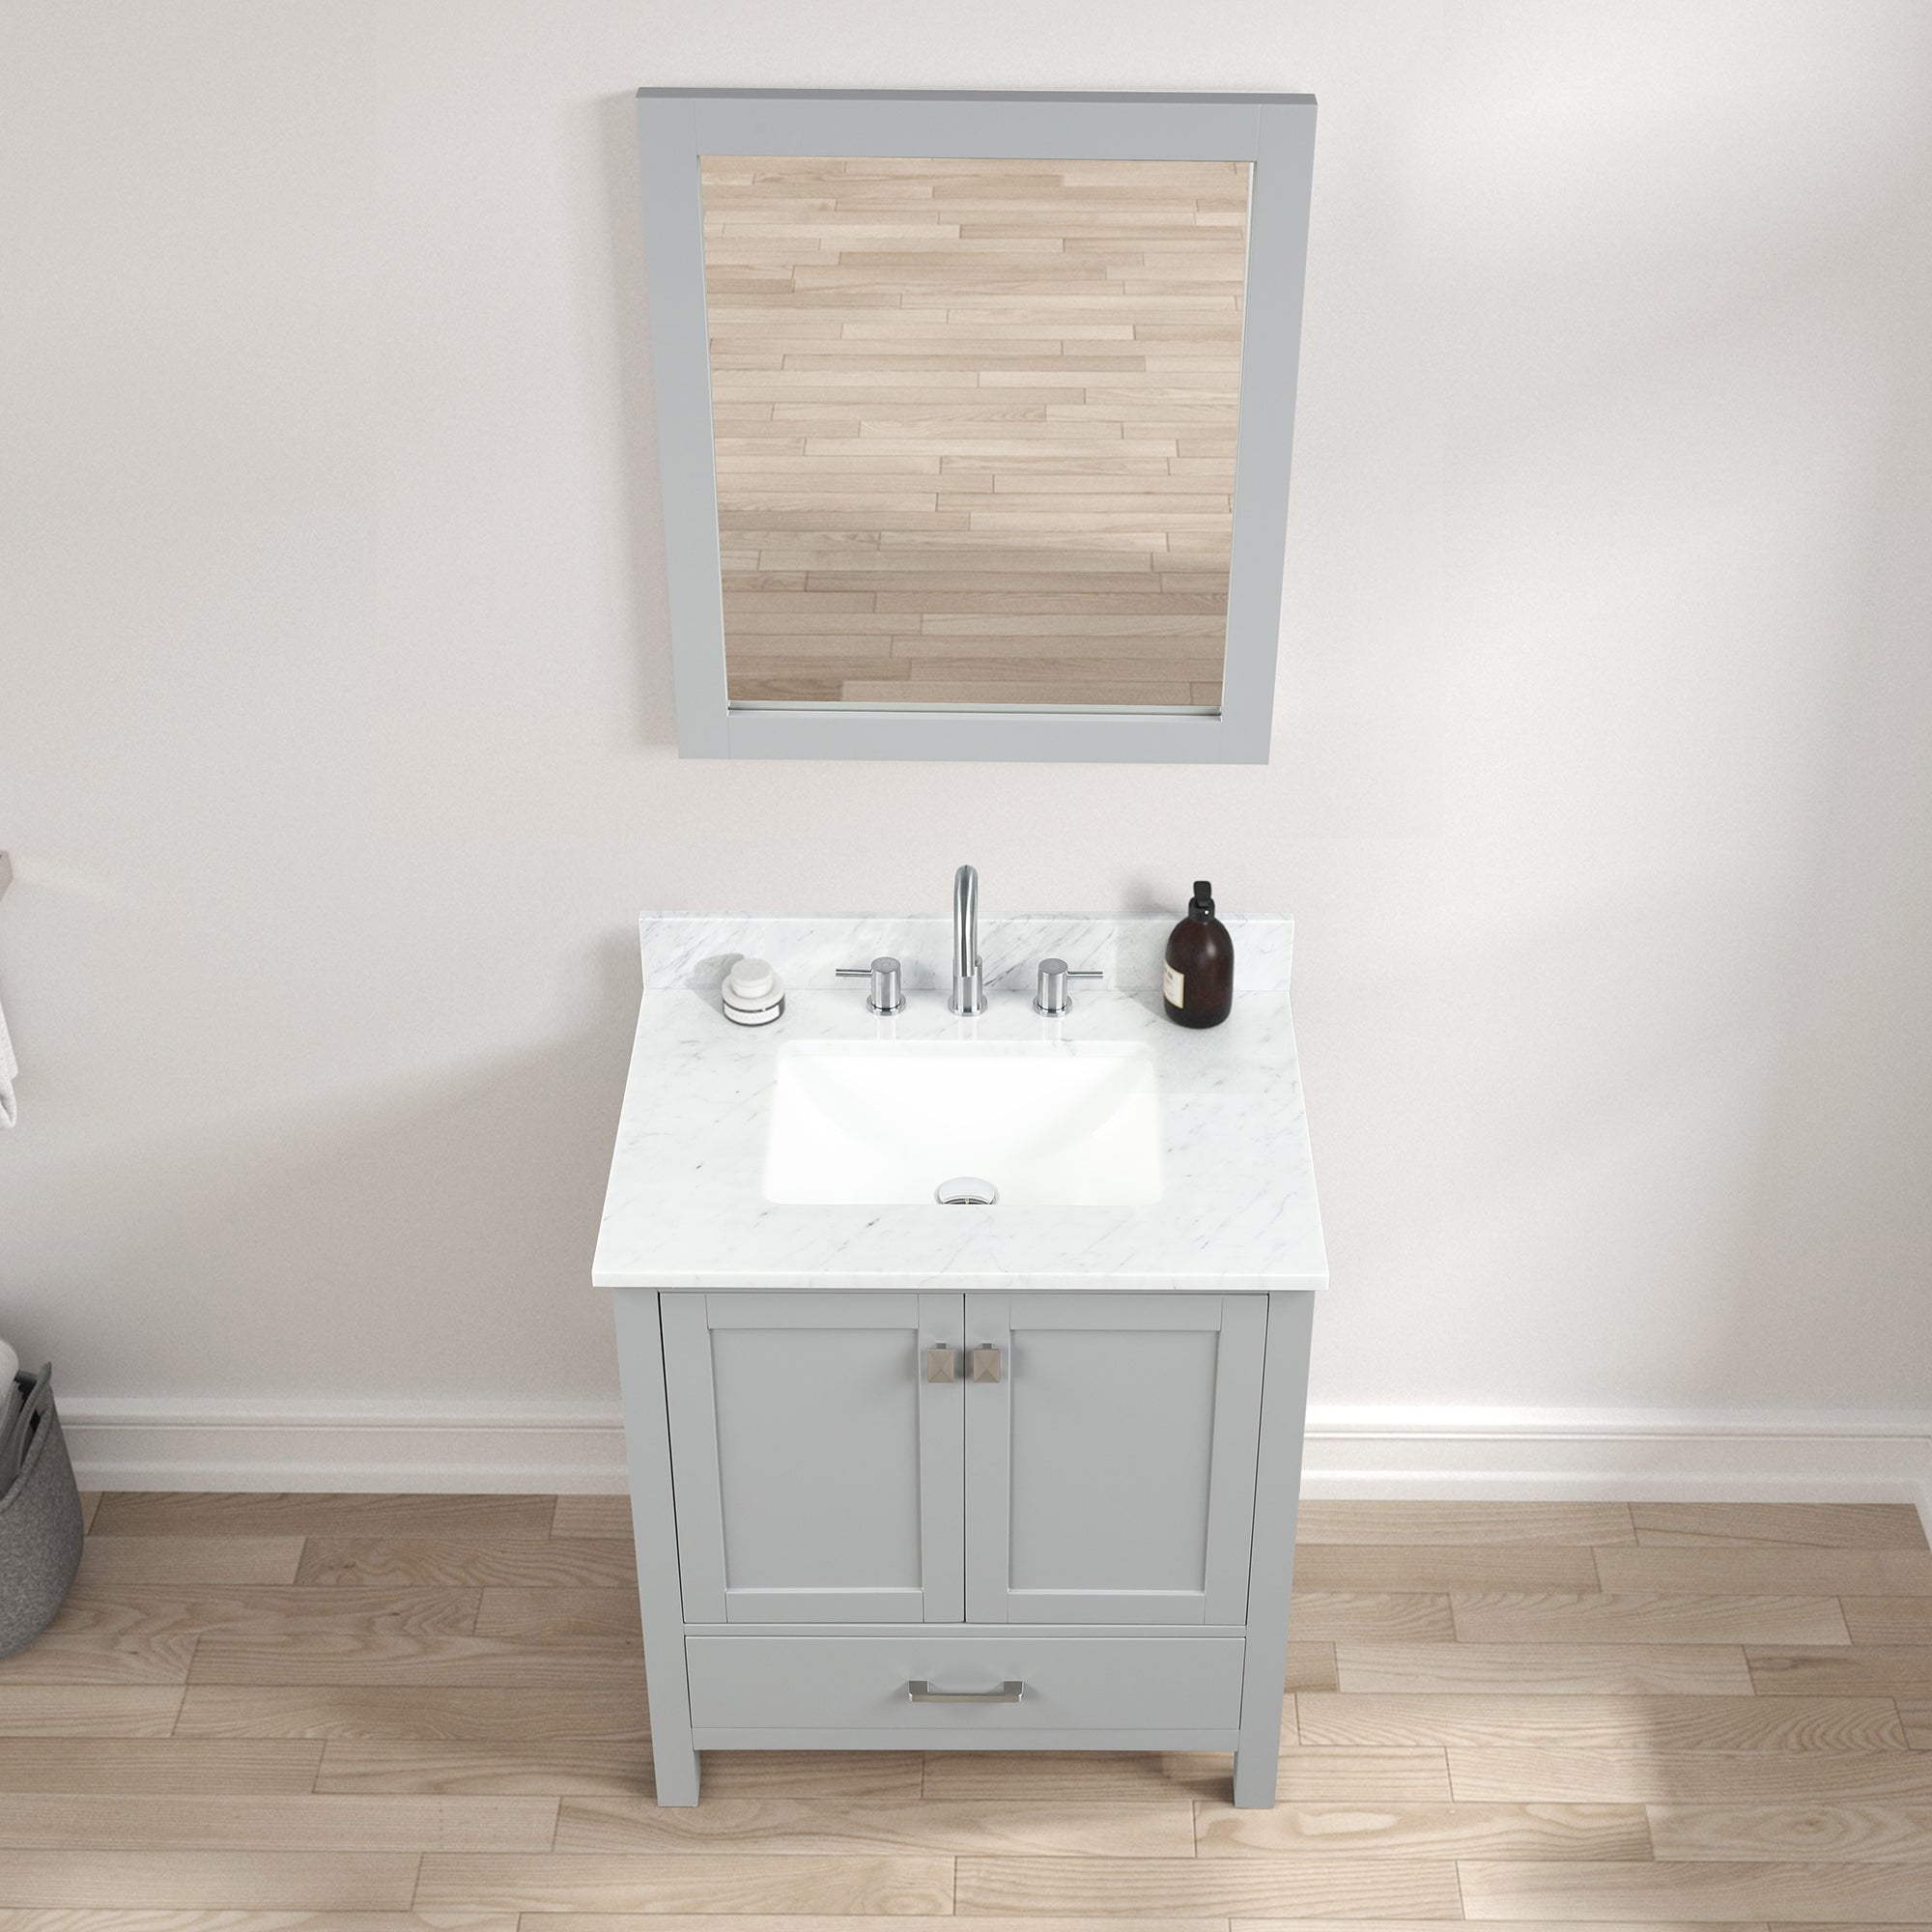 Geneva 30" Bathroom Vanity with Marble Countertop - Contemporary Bathroom Vanity